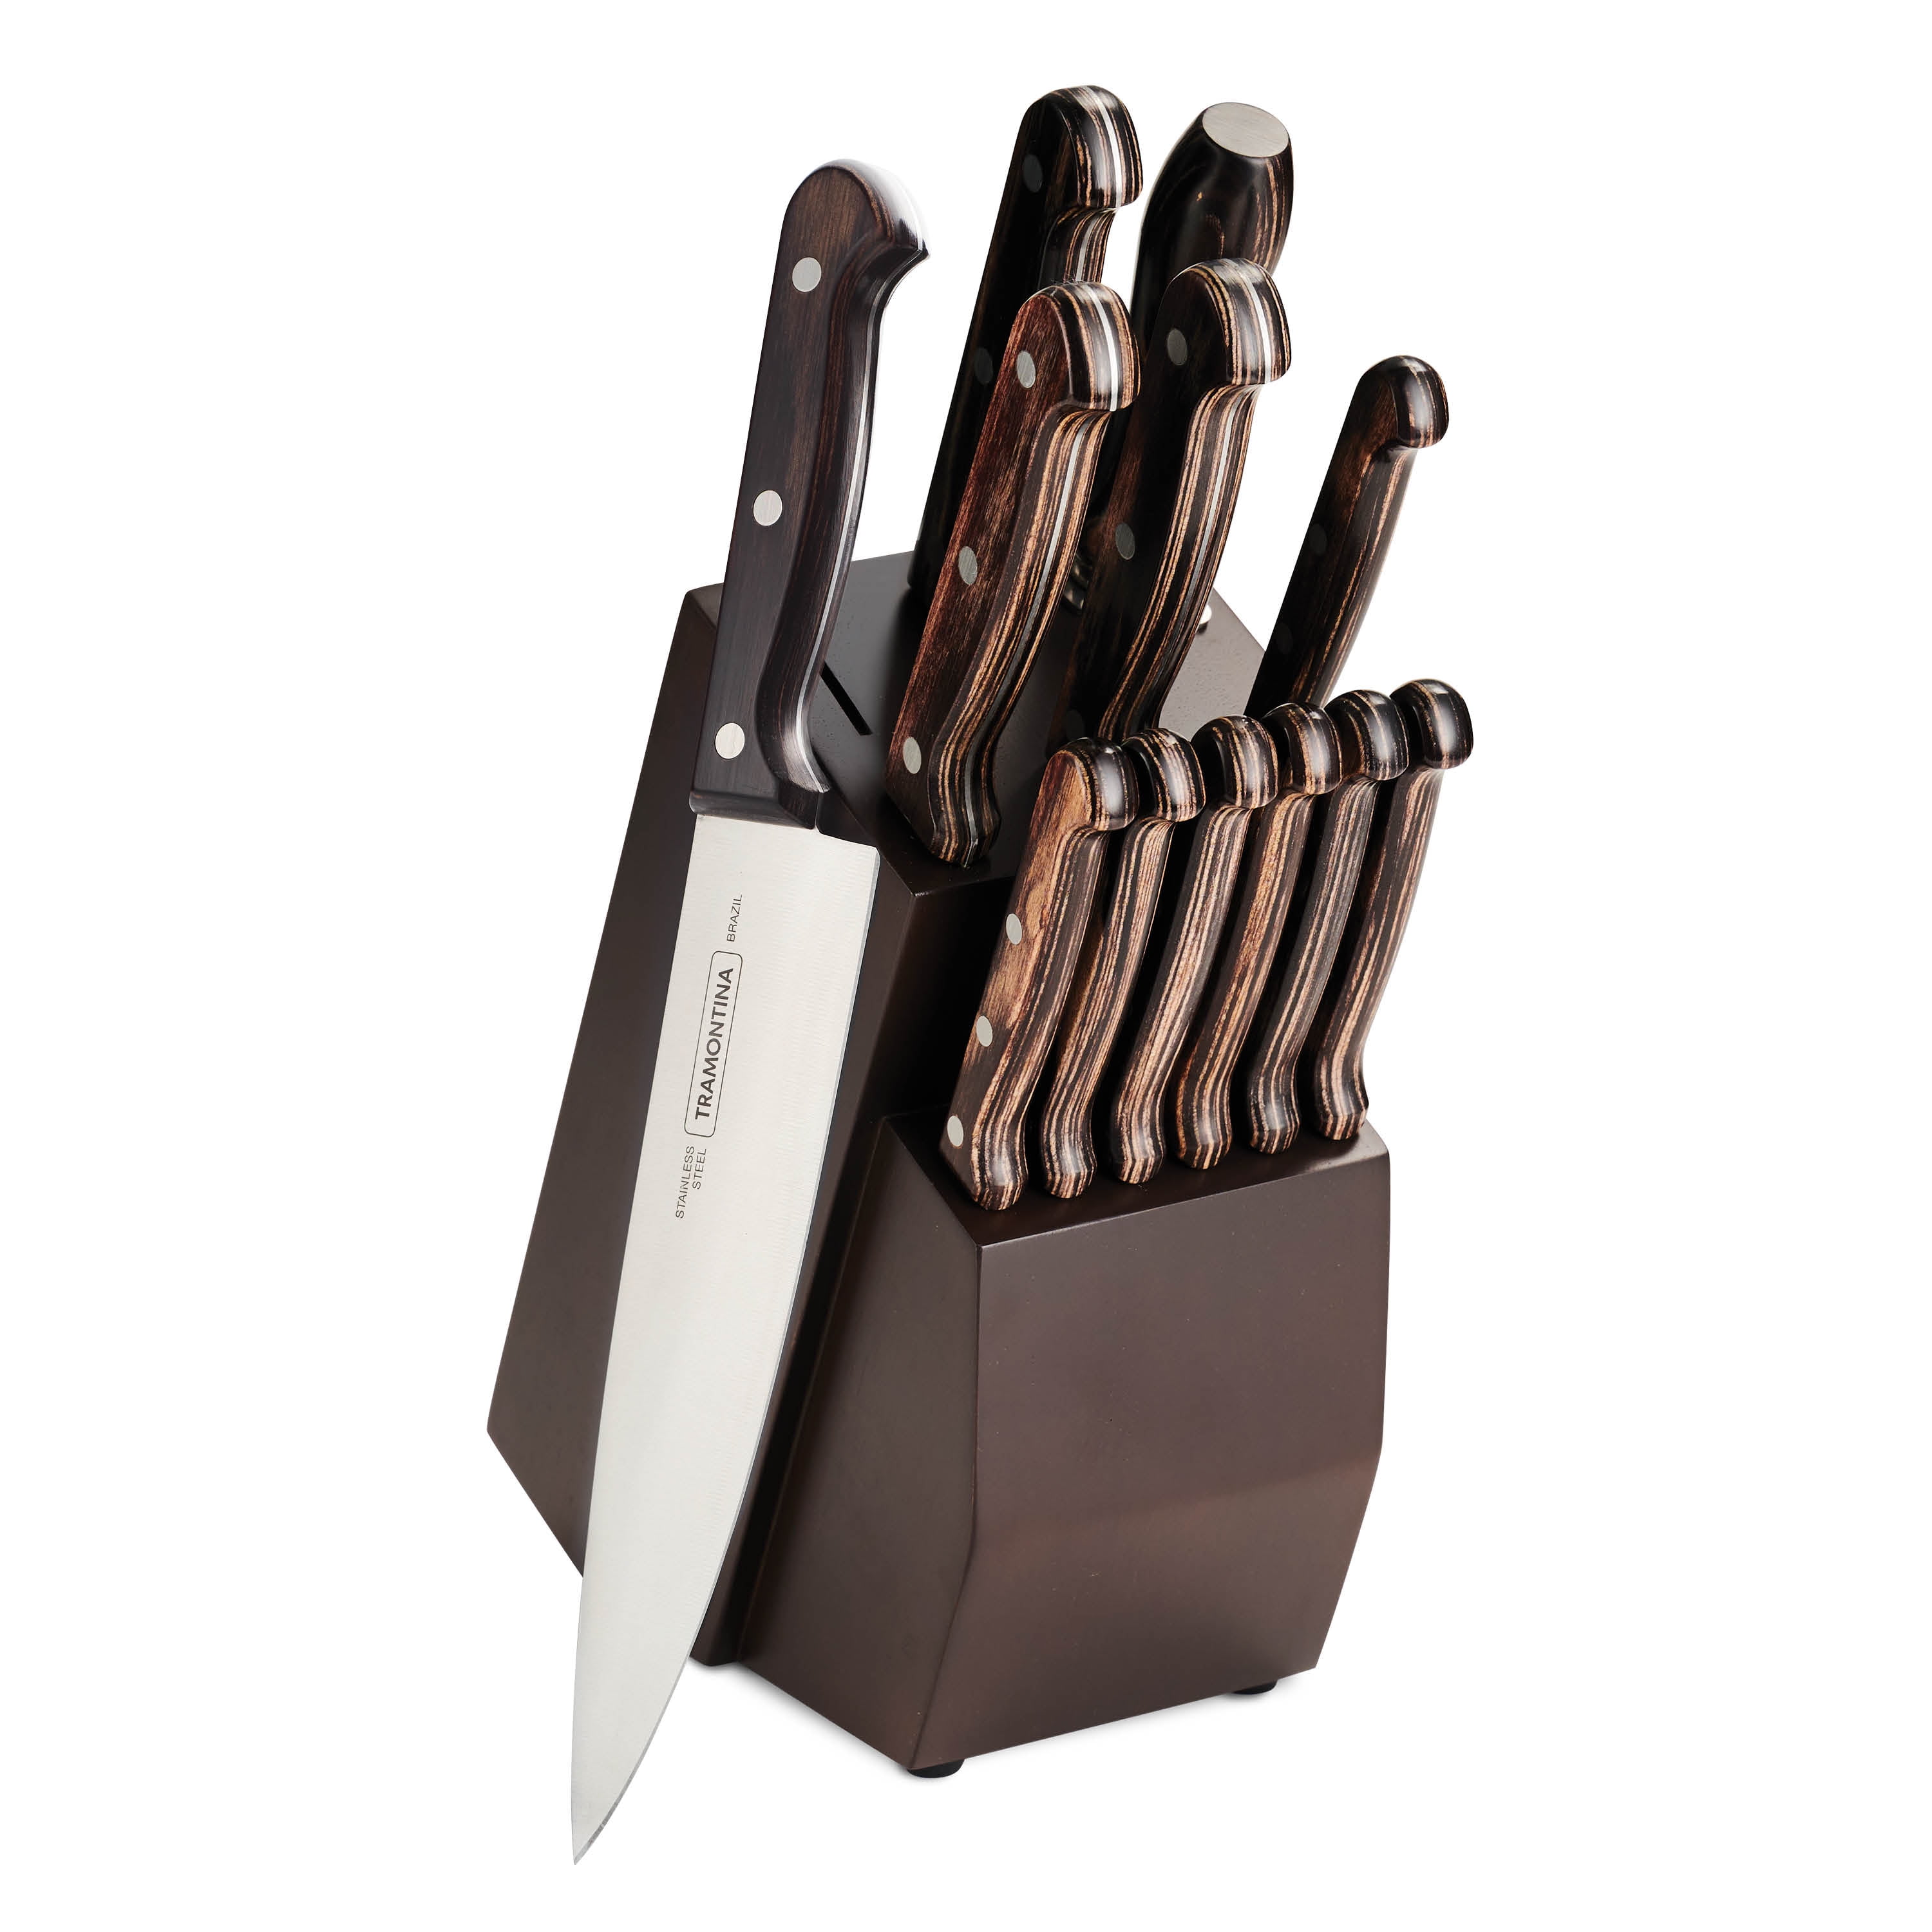 La Kubanita Master Collection Knives 13 Piece Knife Set 7 Knives